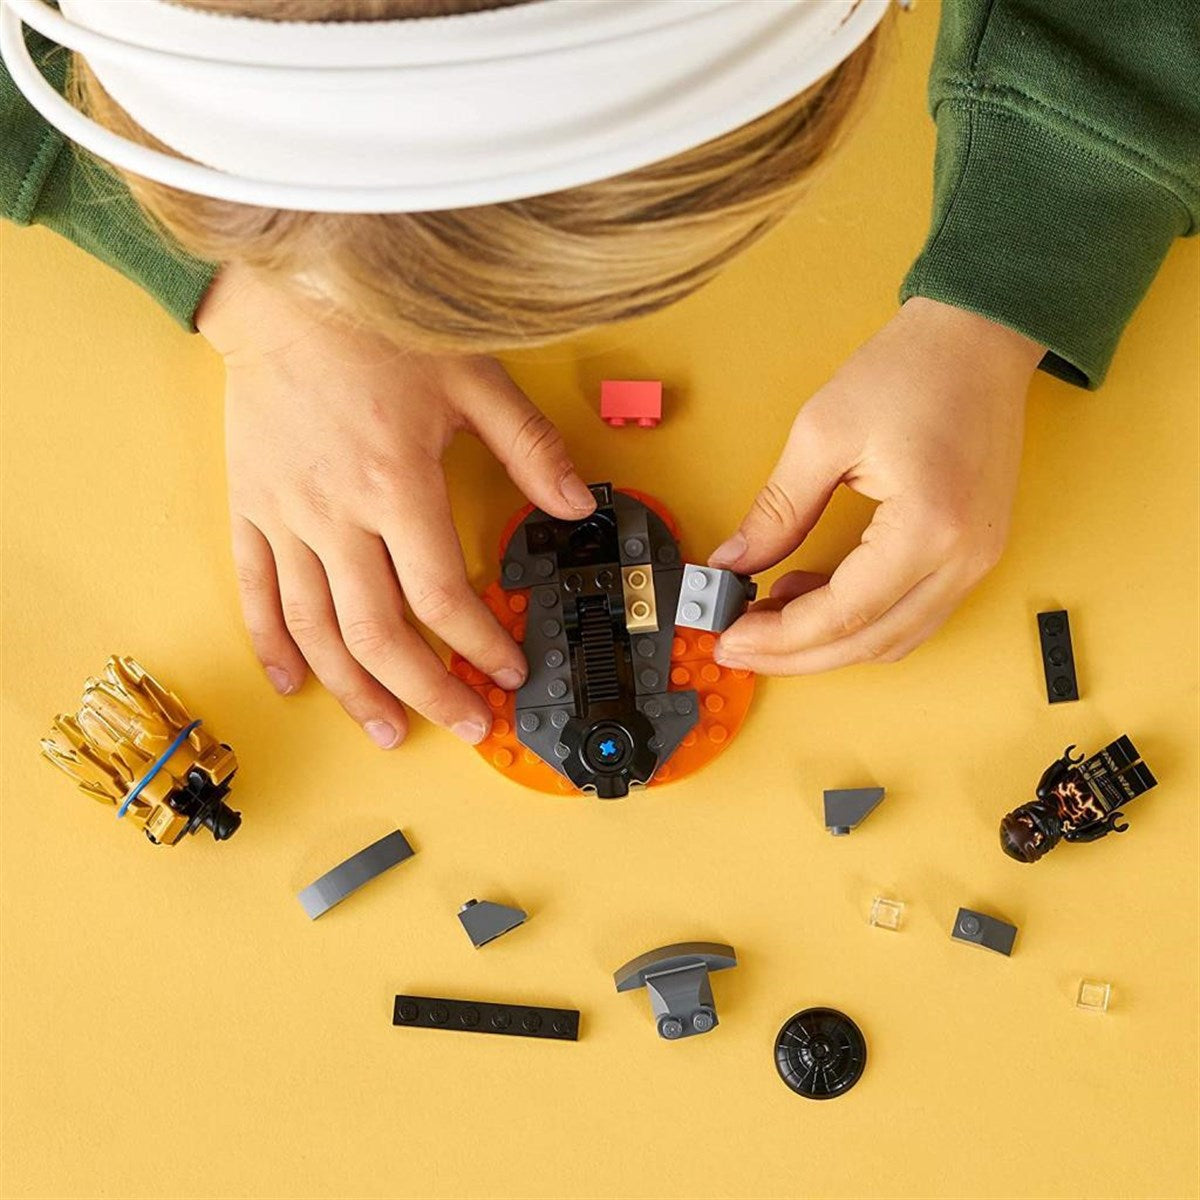 Lego Ninjago Spinjitzu Patlaması - Cole 70685 | Toysall